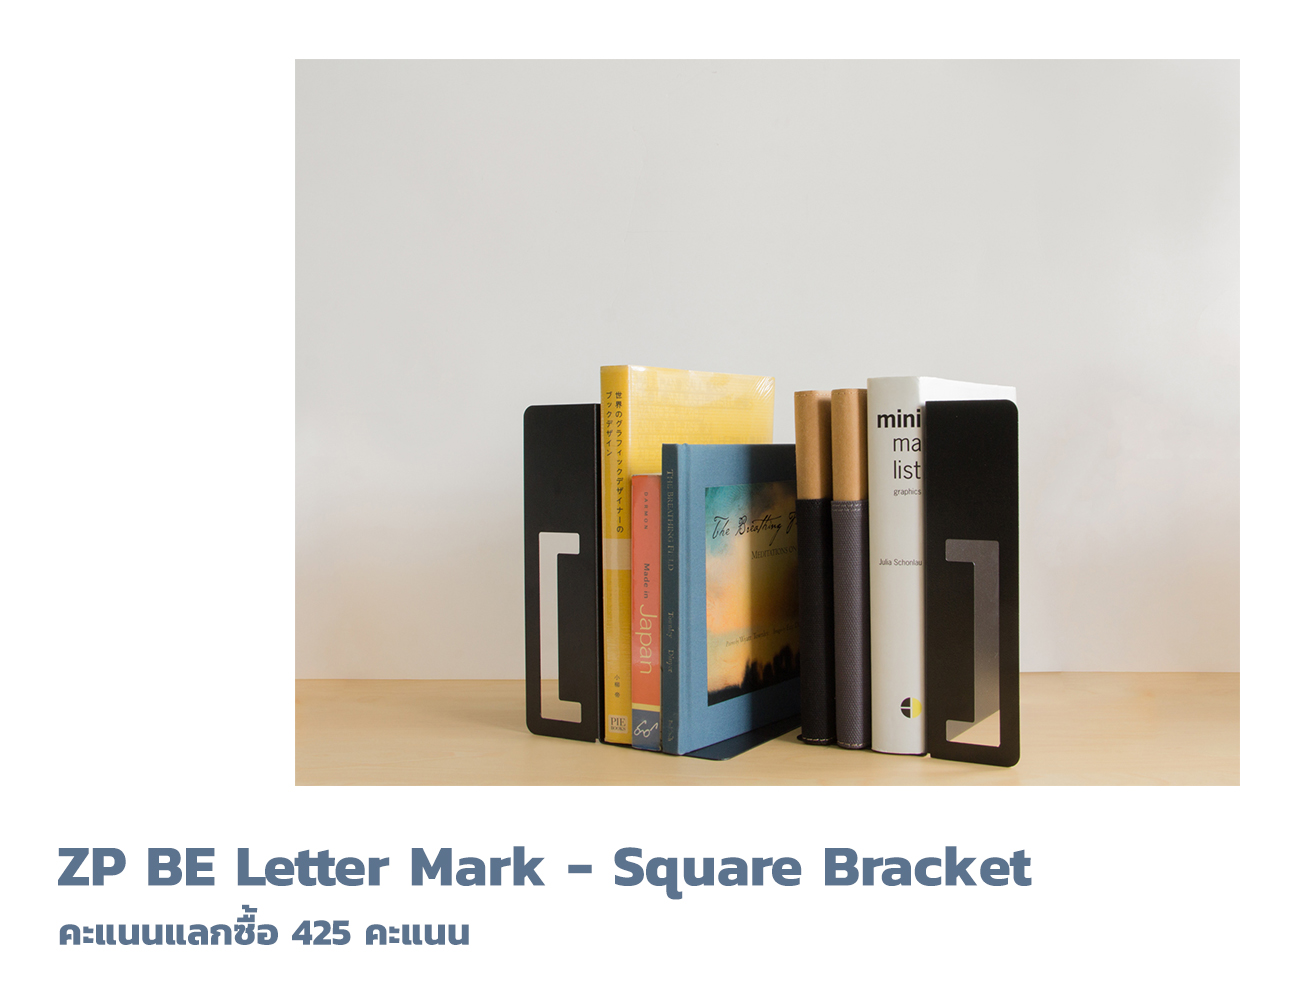 ZP BE Letter Mark - Square Bracket